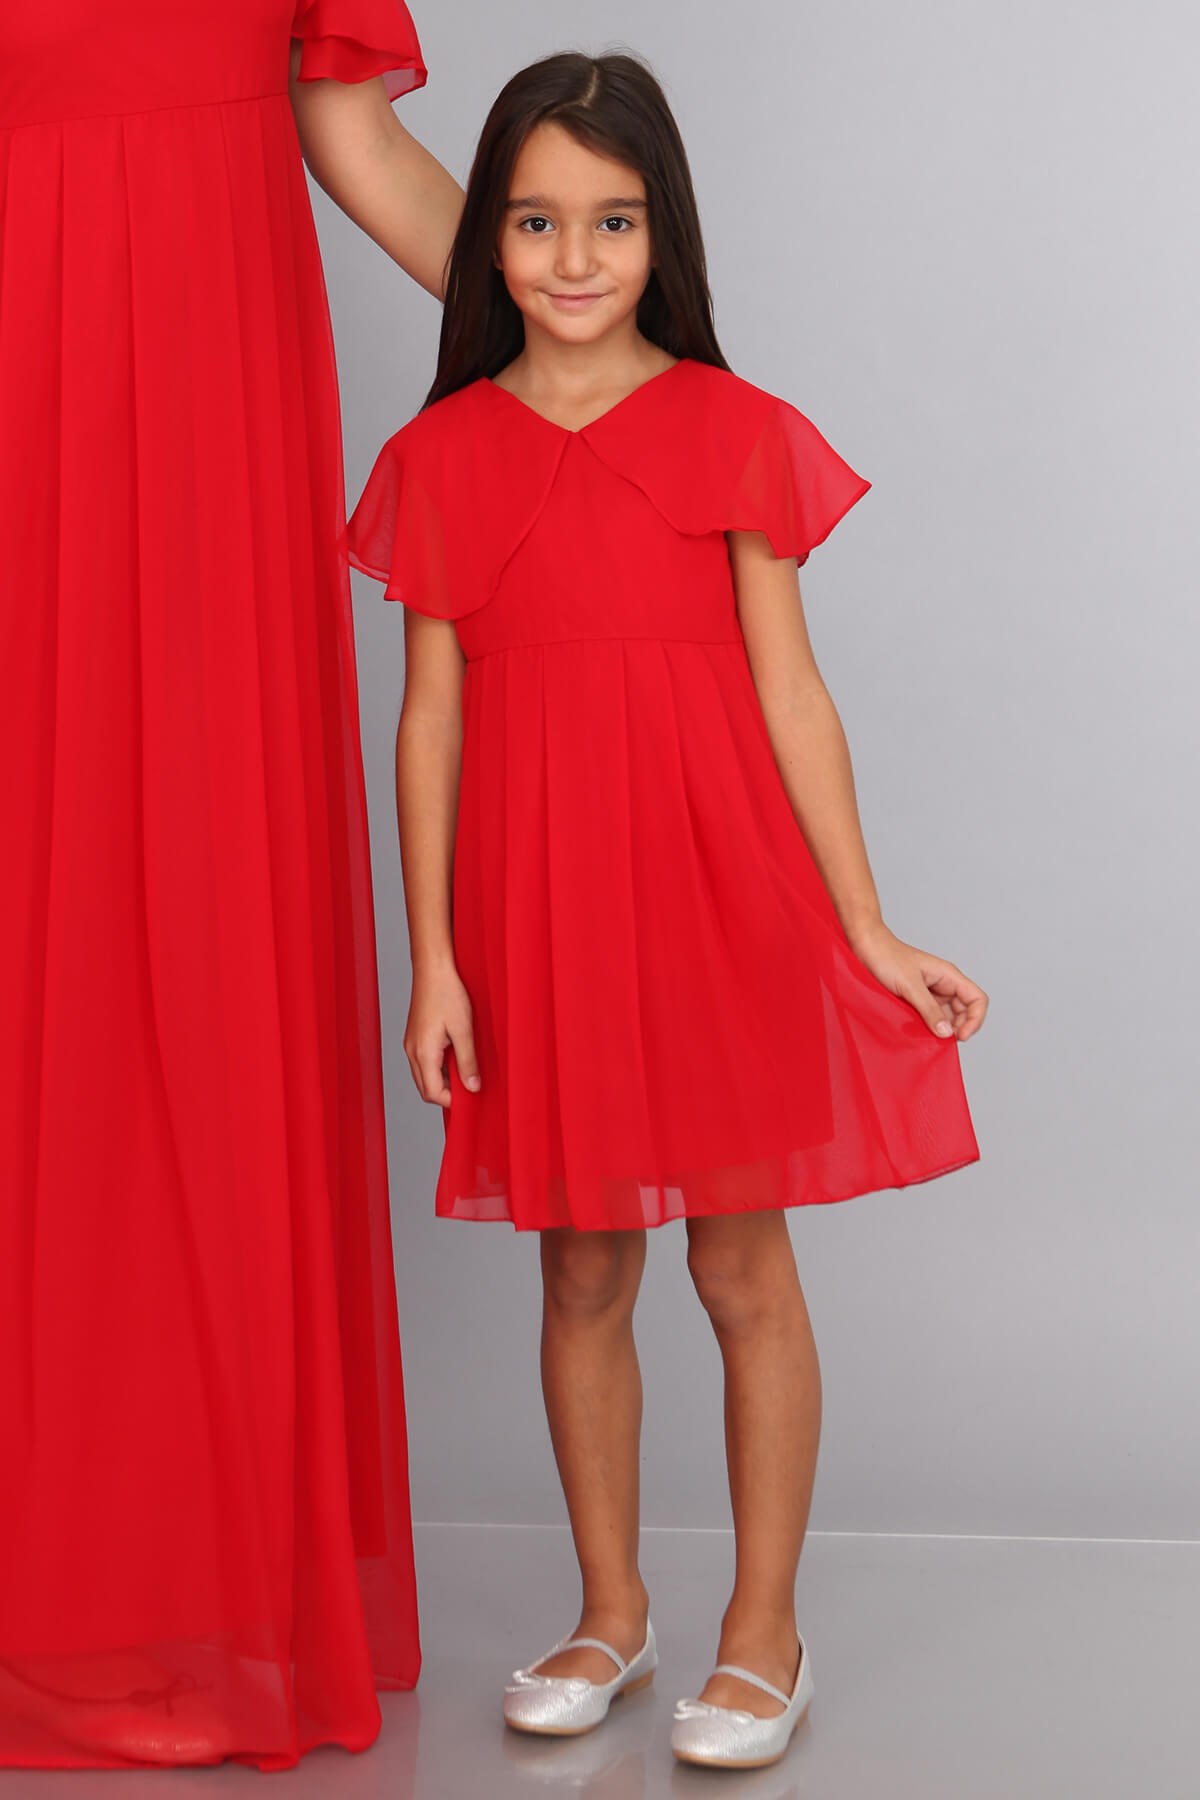 Moda Labio | Melek Kol Kız Çocuk Kırmızı Elbise